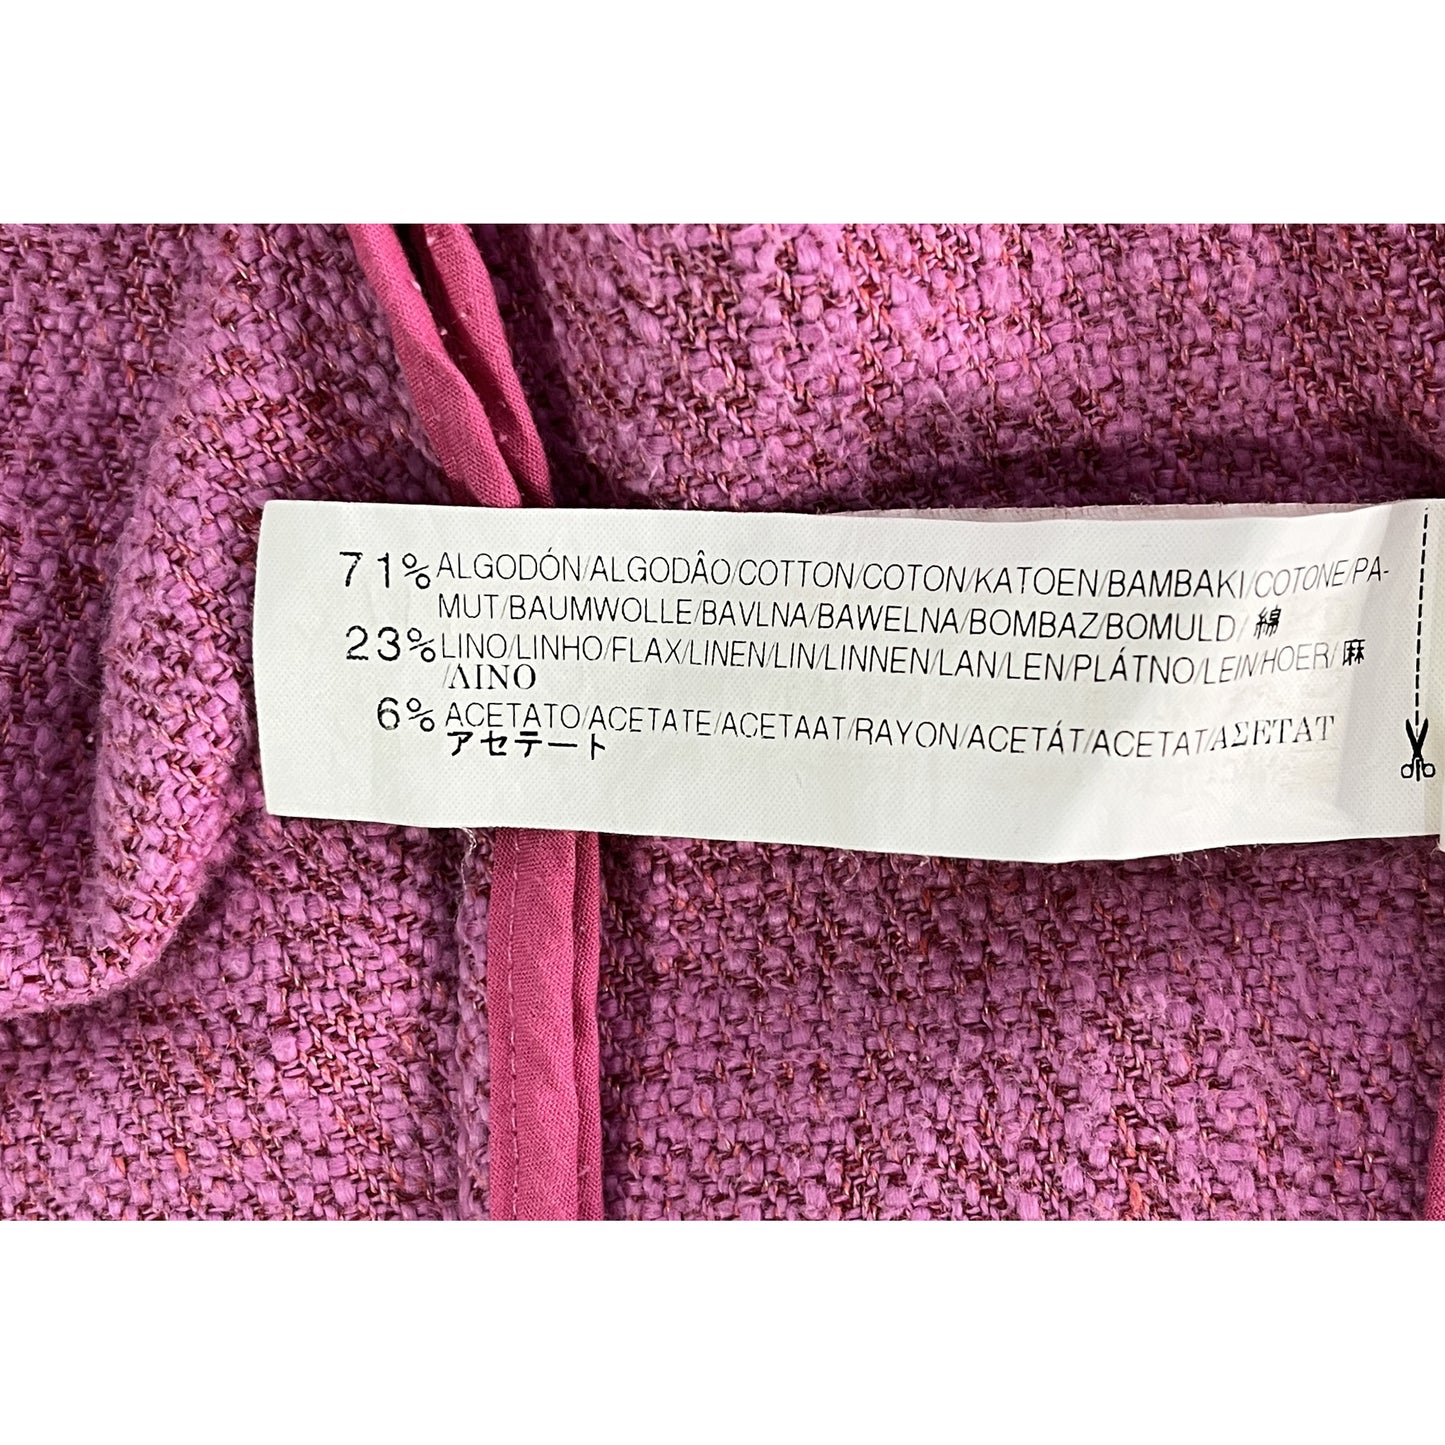 Zara Blazer Knit Pink Size S SKU 00001-3